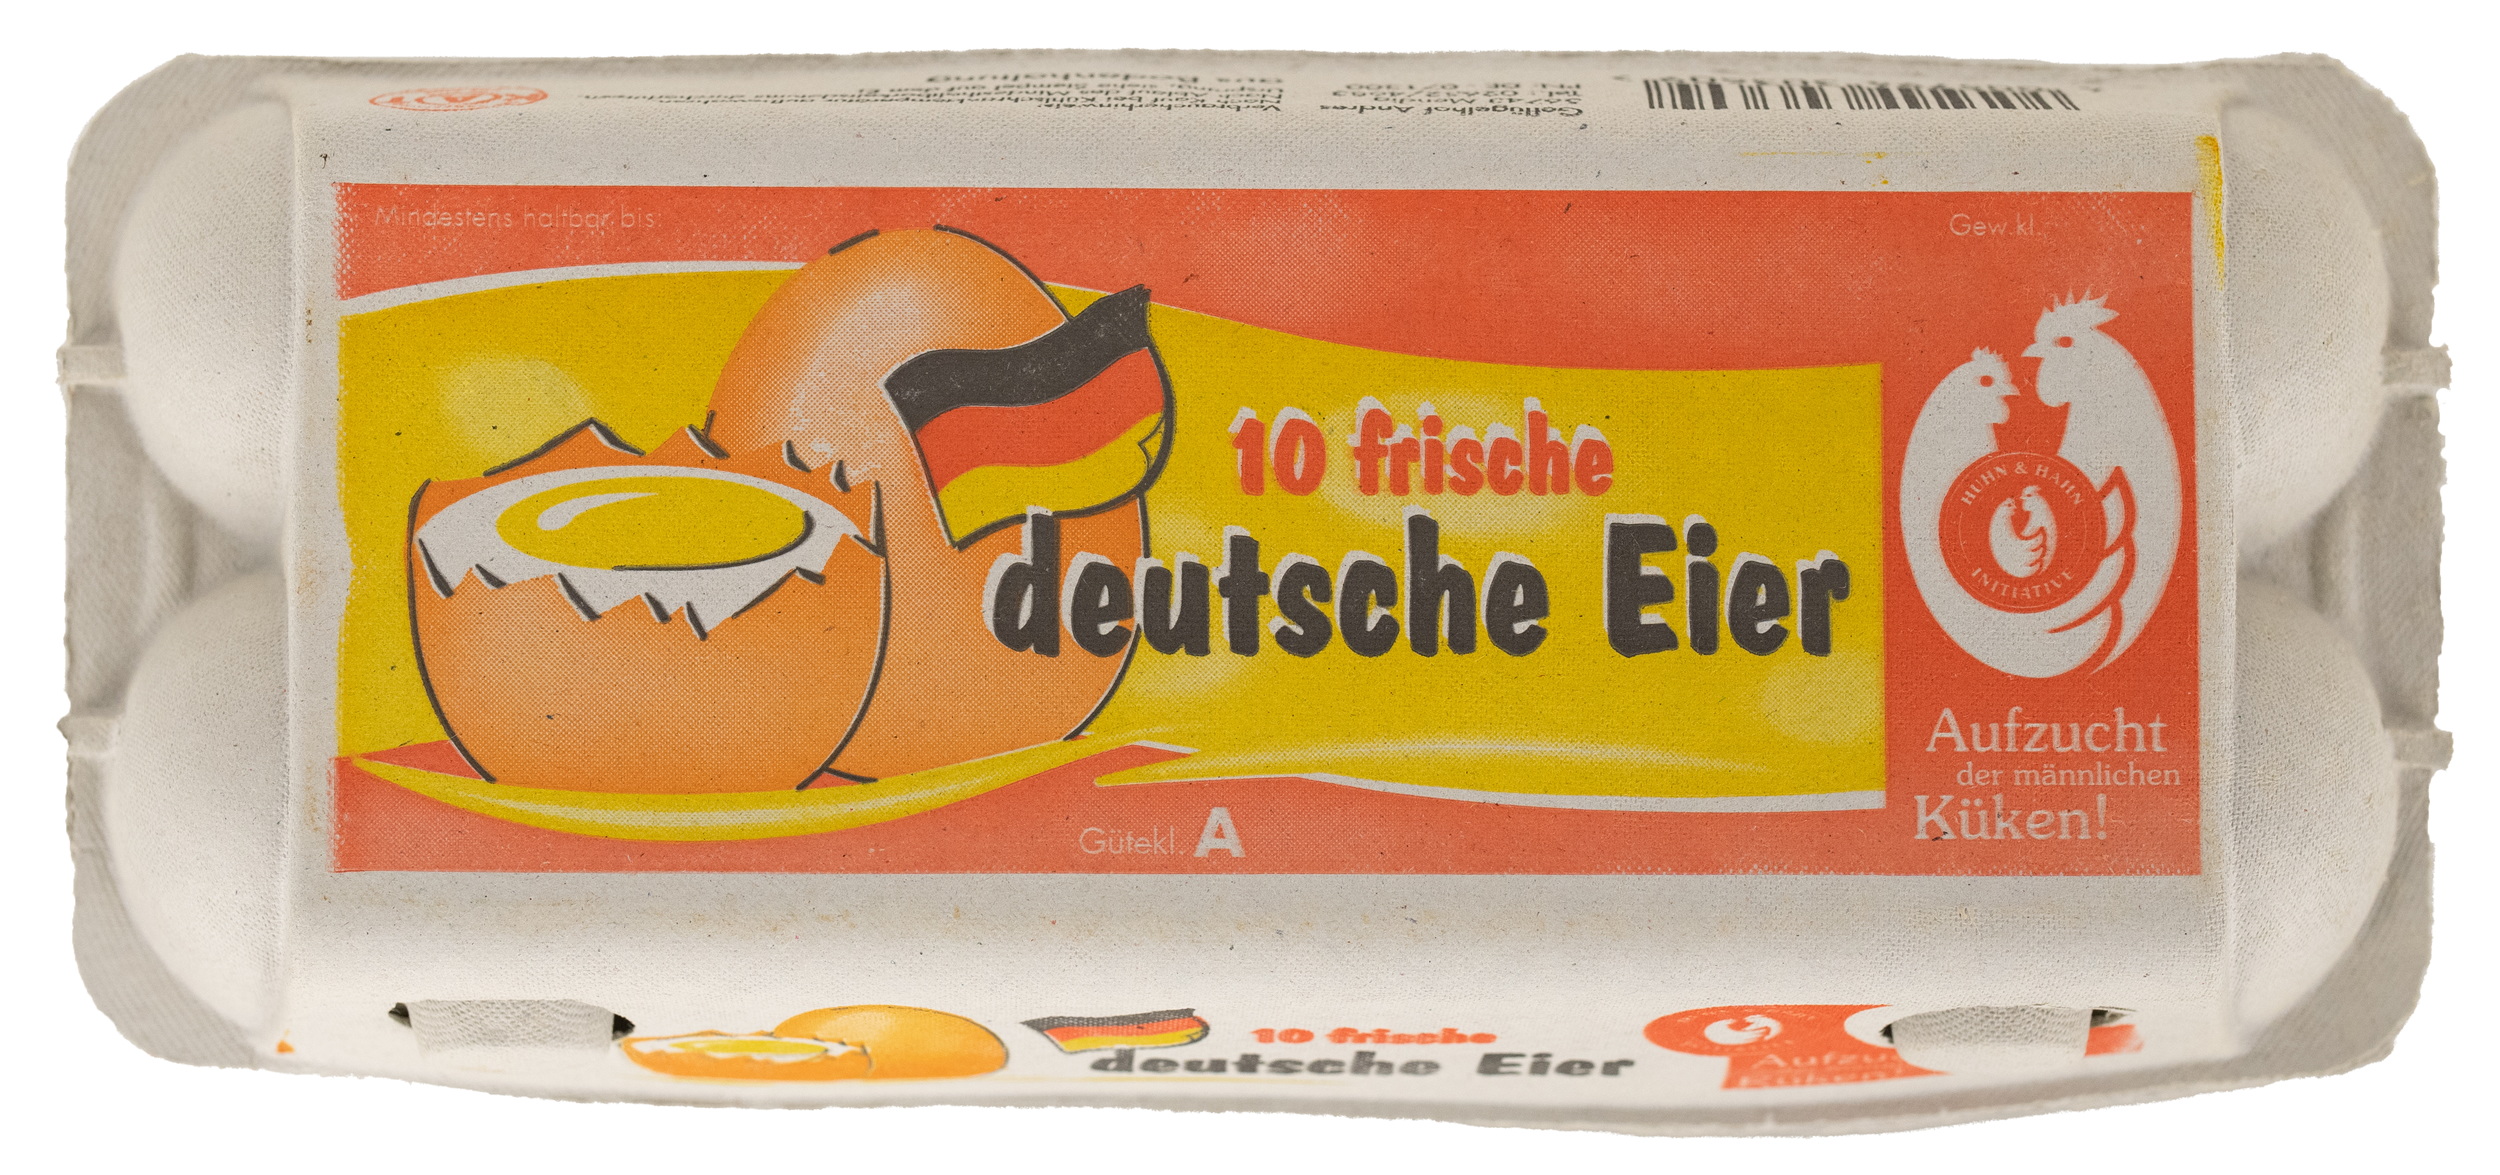 10 frische deutsche Eier // Geflügelhof Andres Mendig